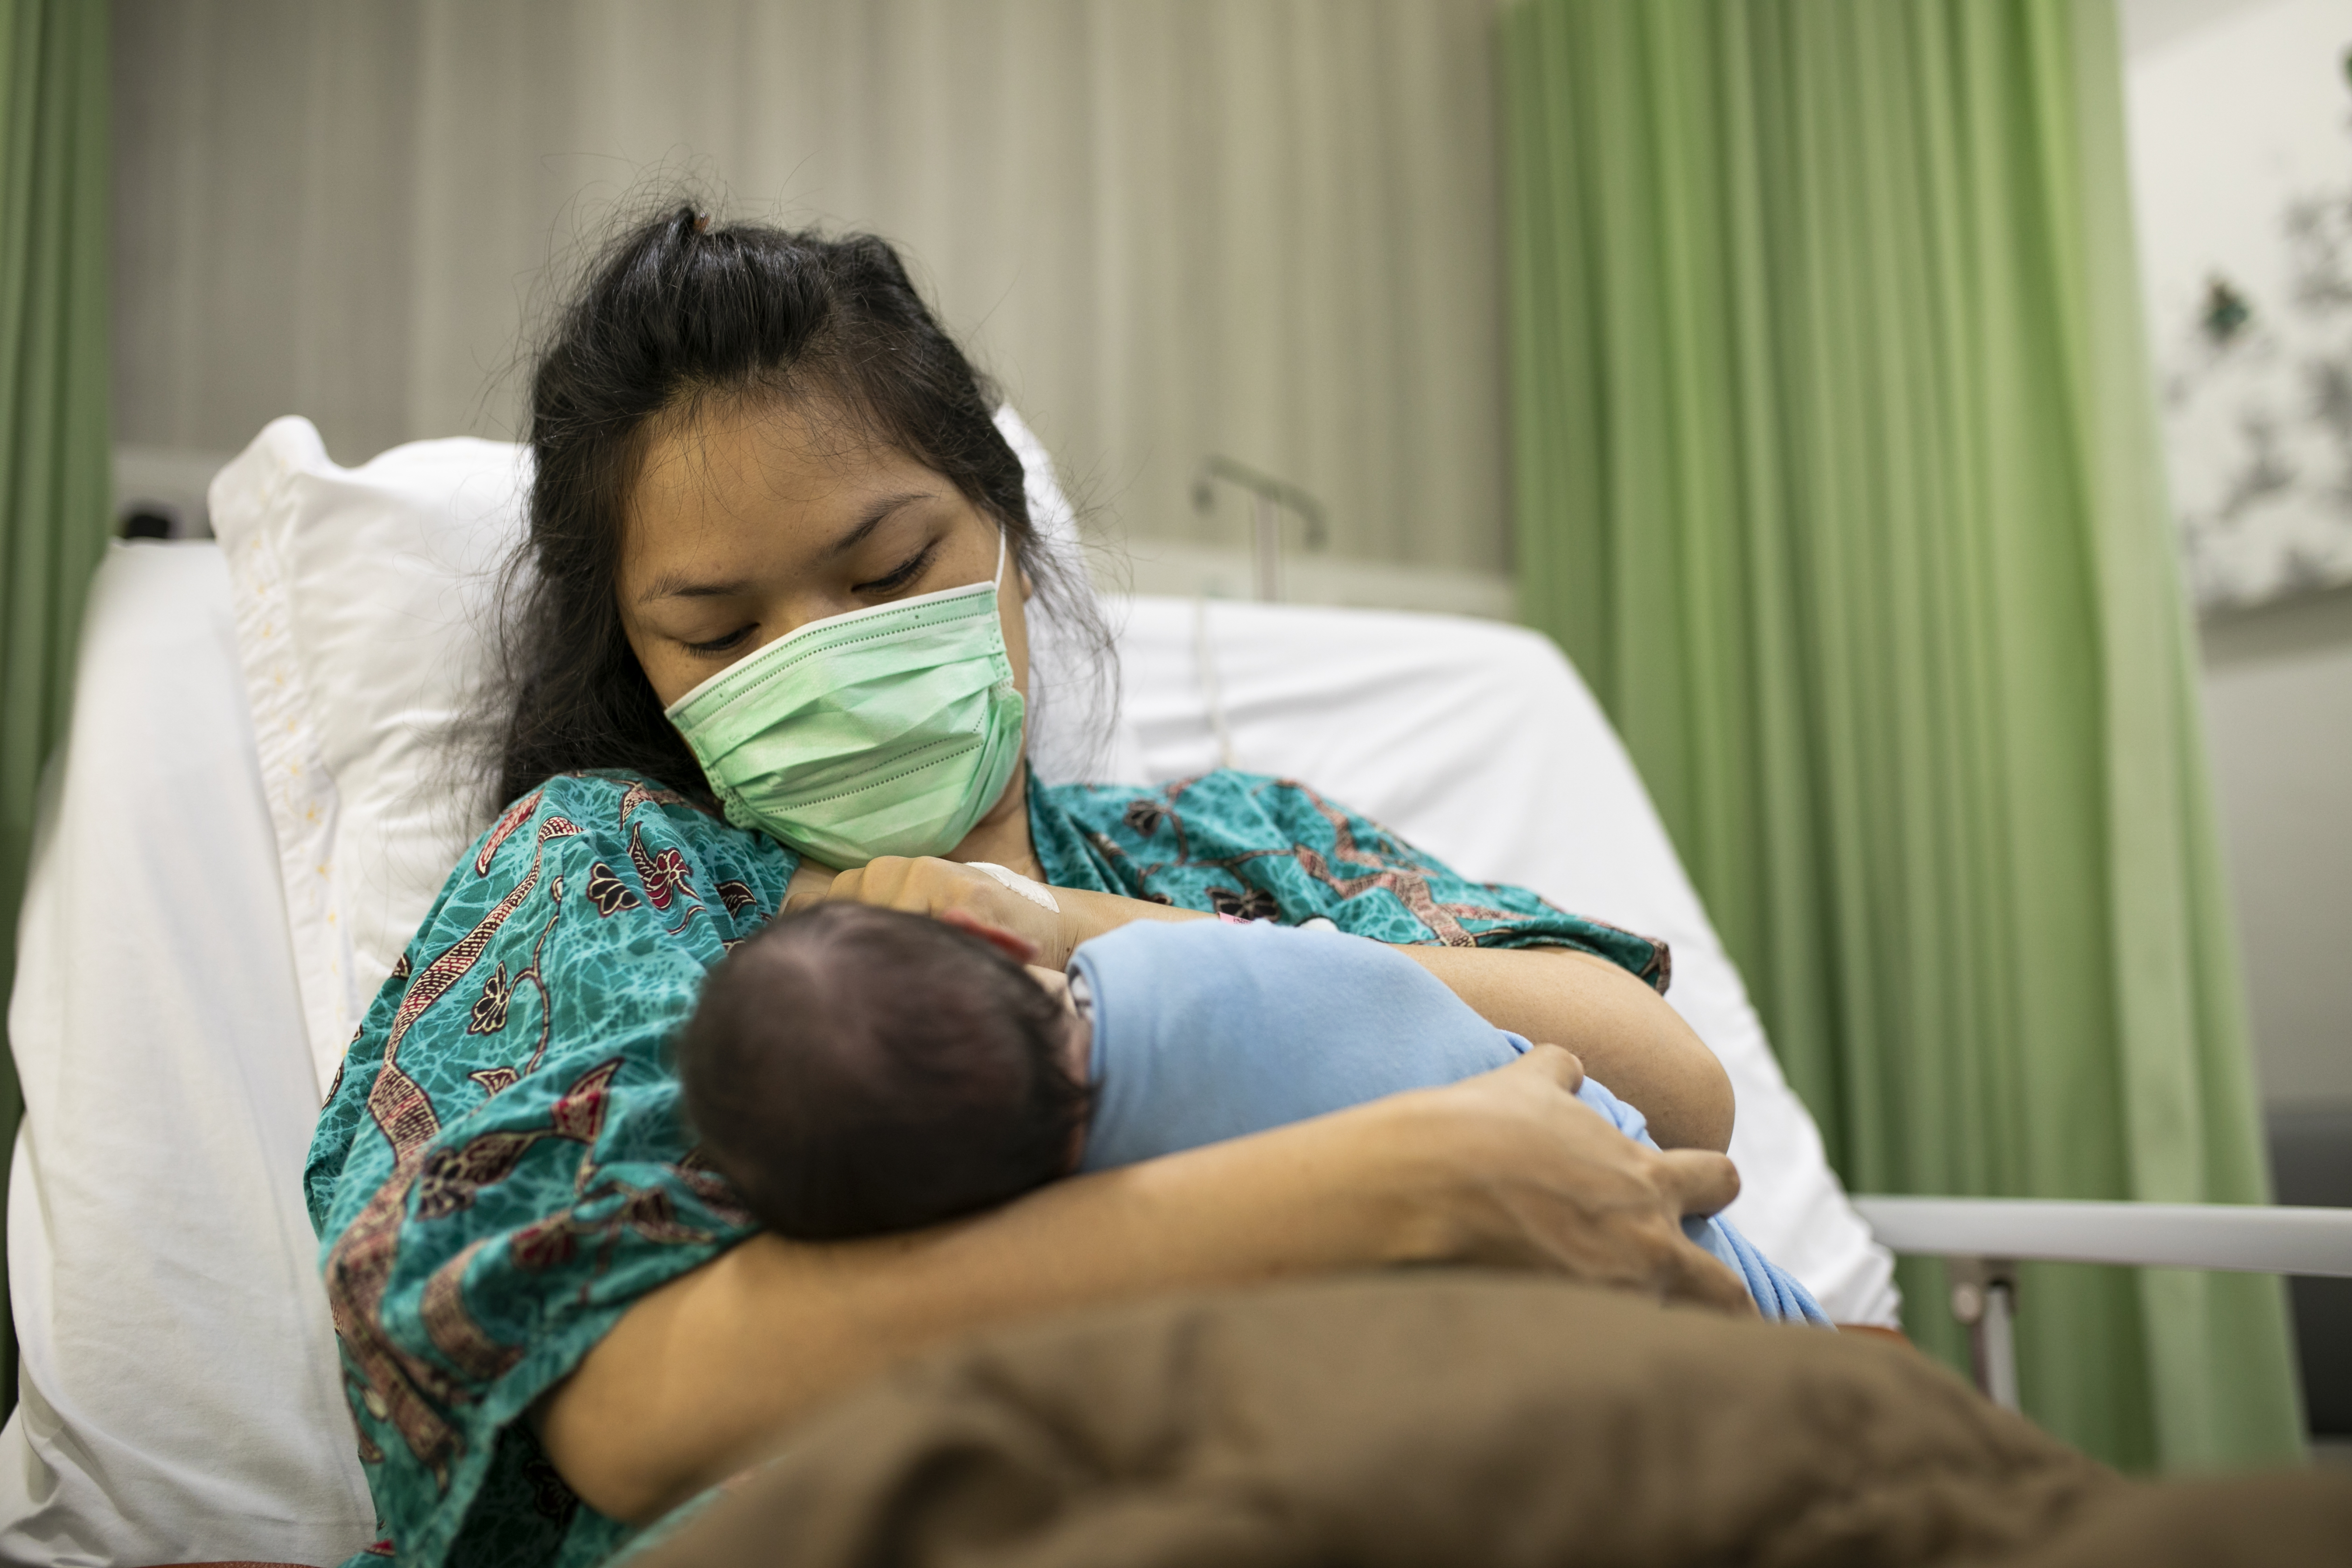 Mãe-segurando-recém-nascido-no-colo-no-hospital-durante-a-pandemia-do-covid19